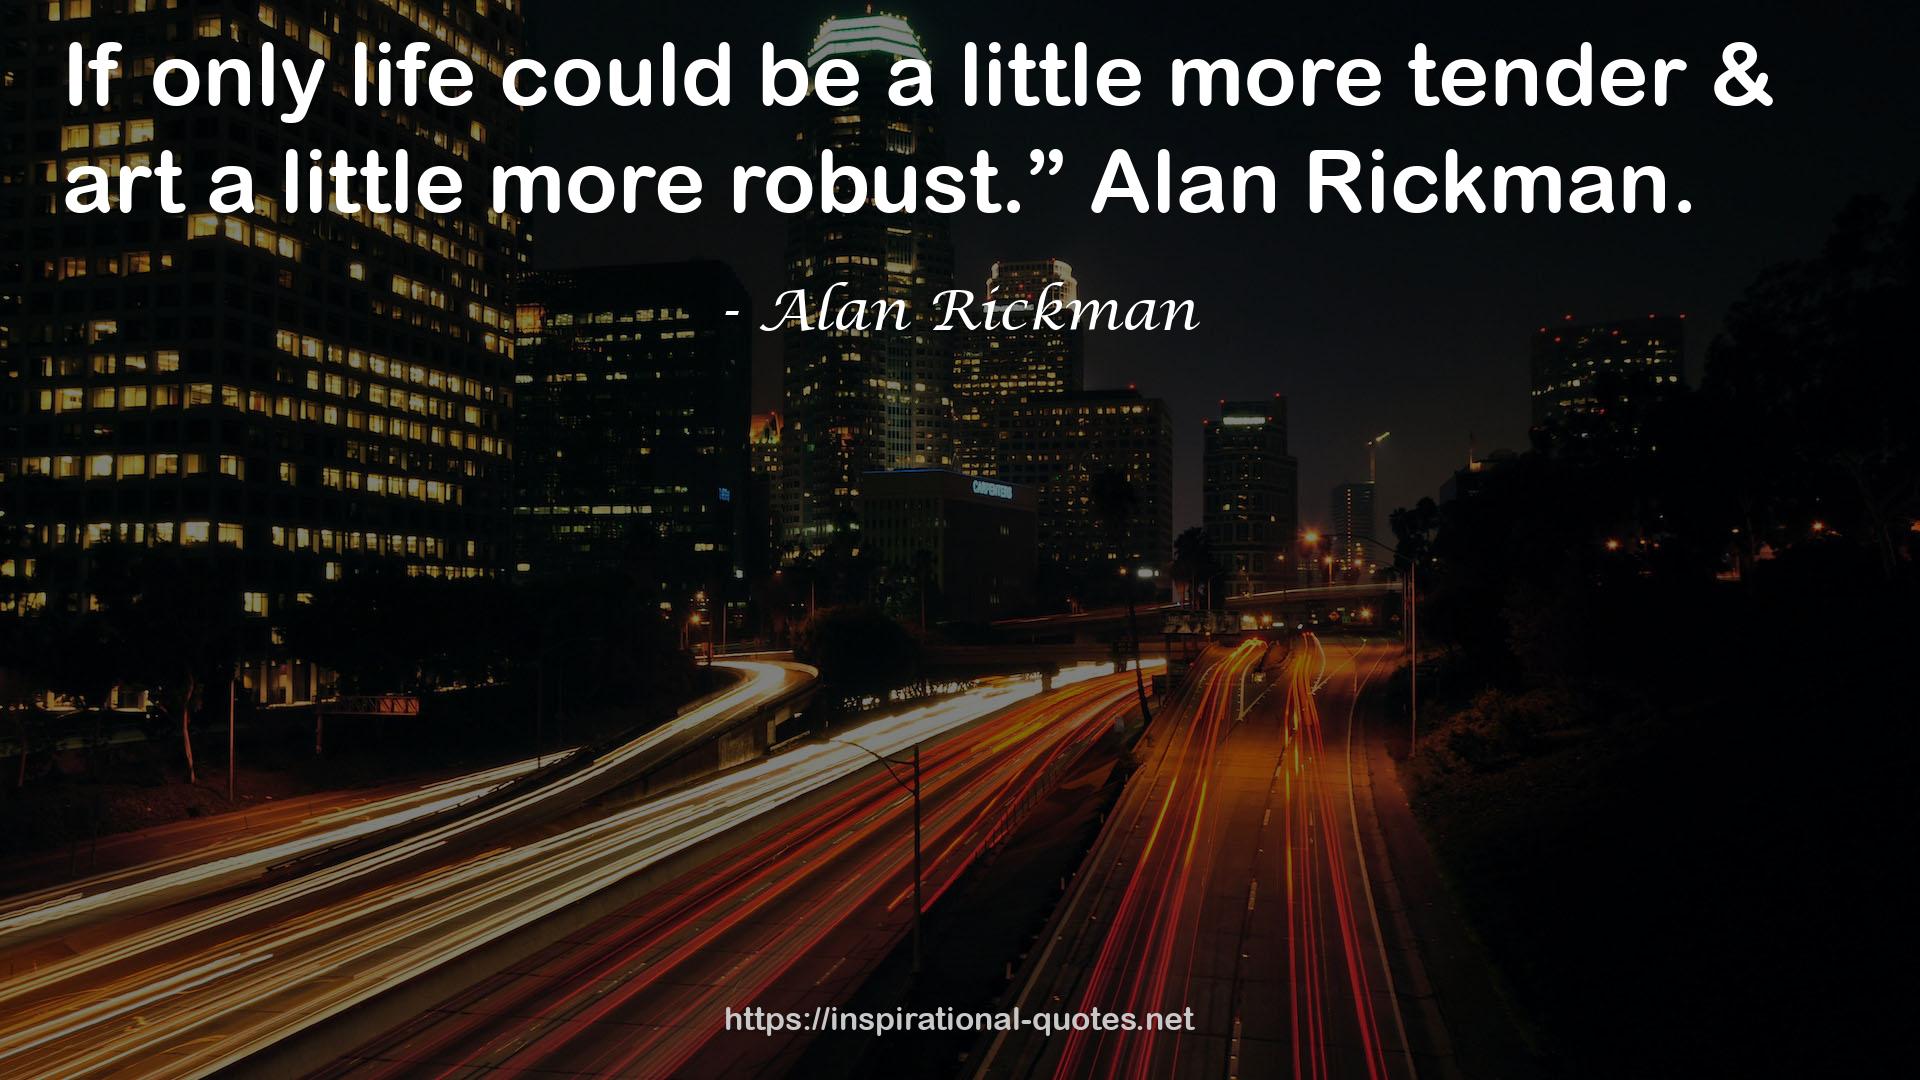 Alan Rickman QUOTES